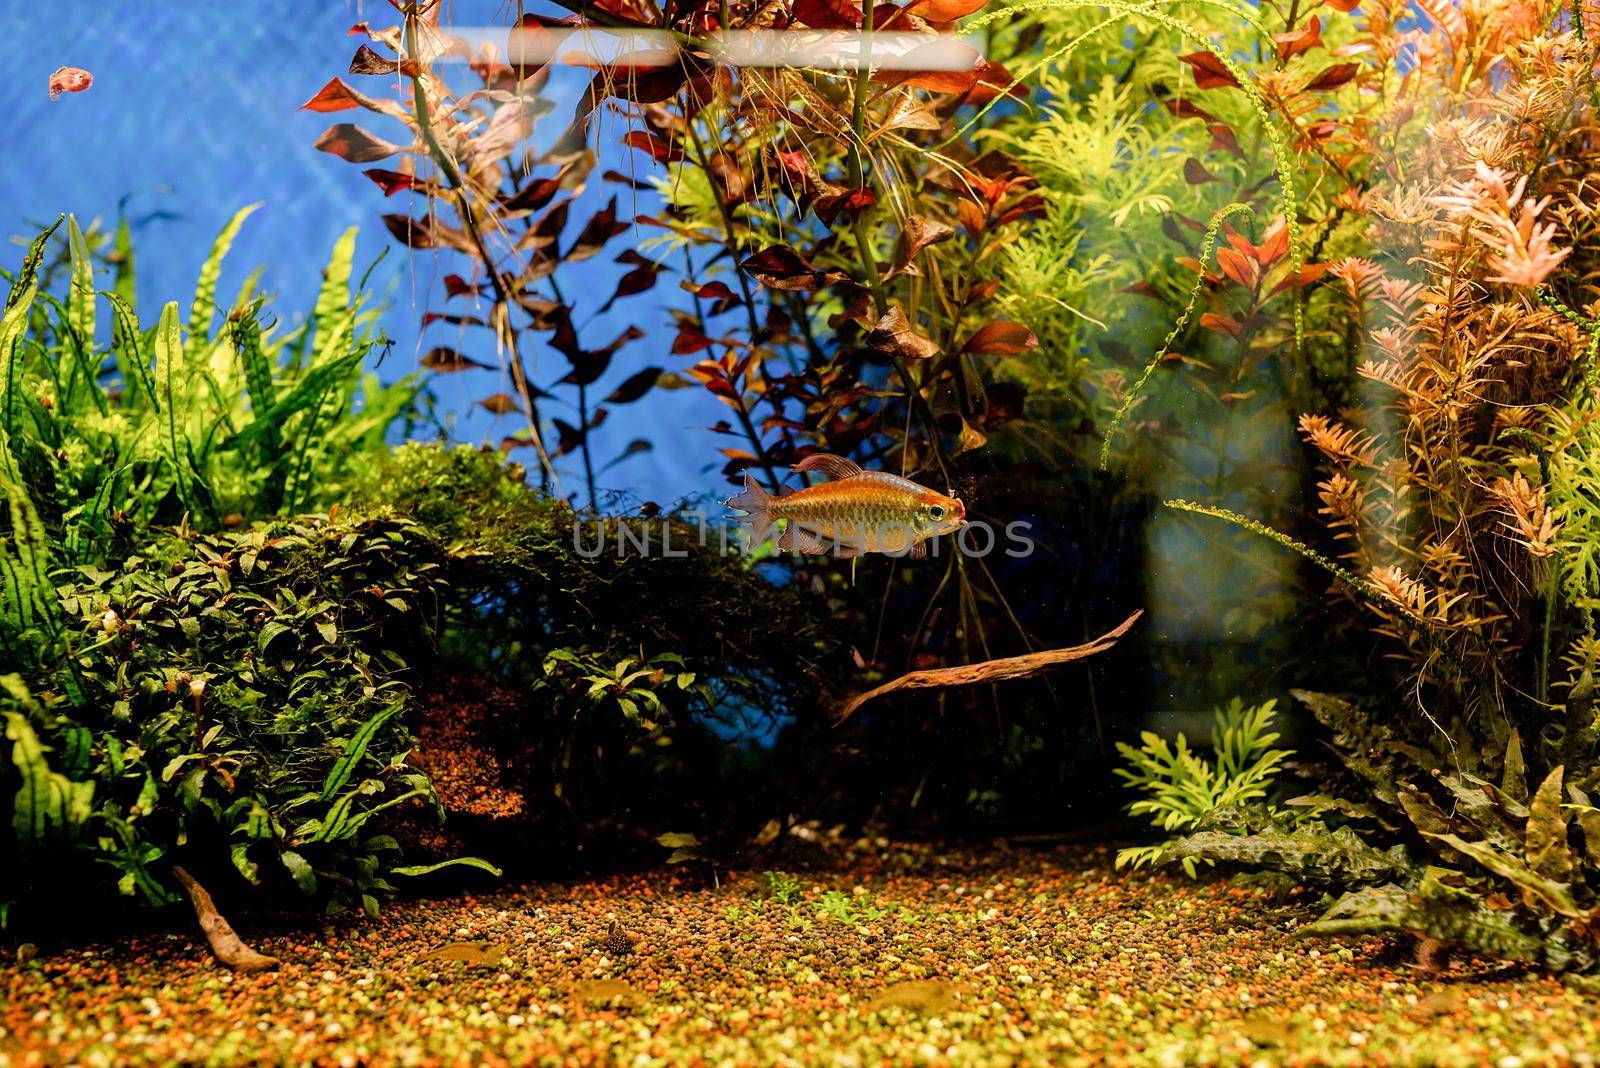 aquariums with fish in oceanarium by Desperada